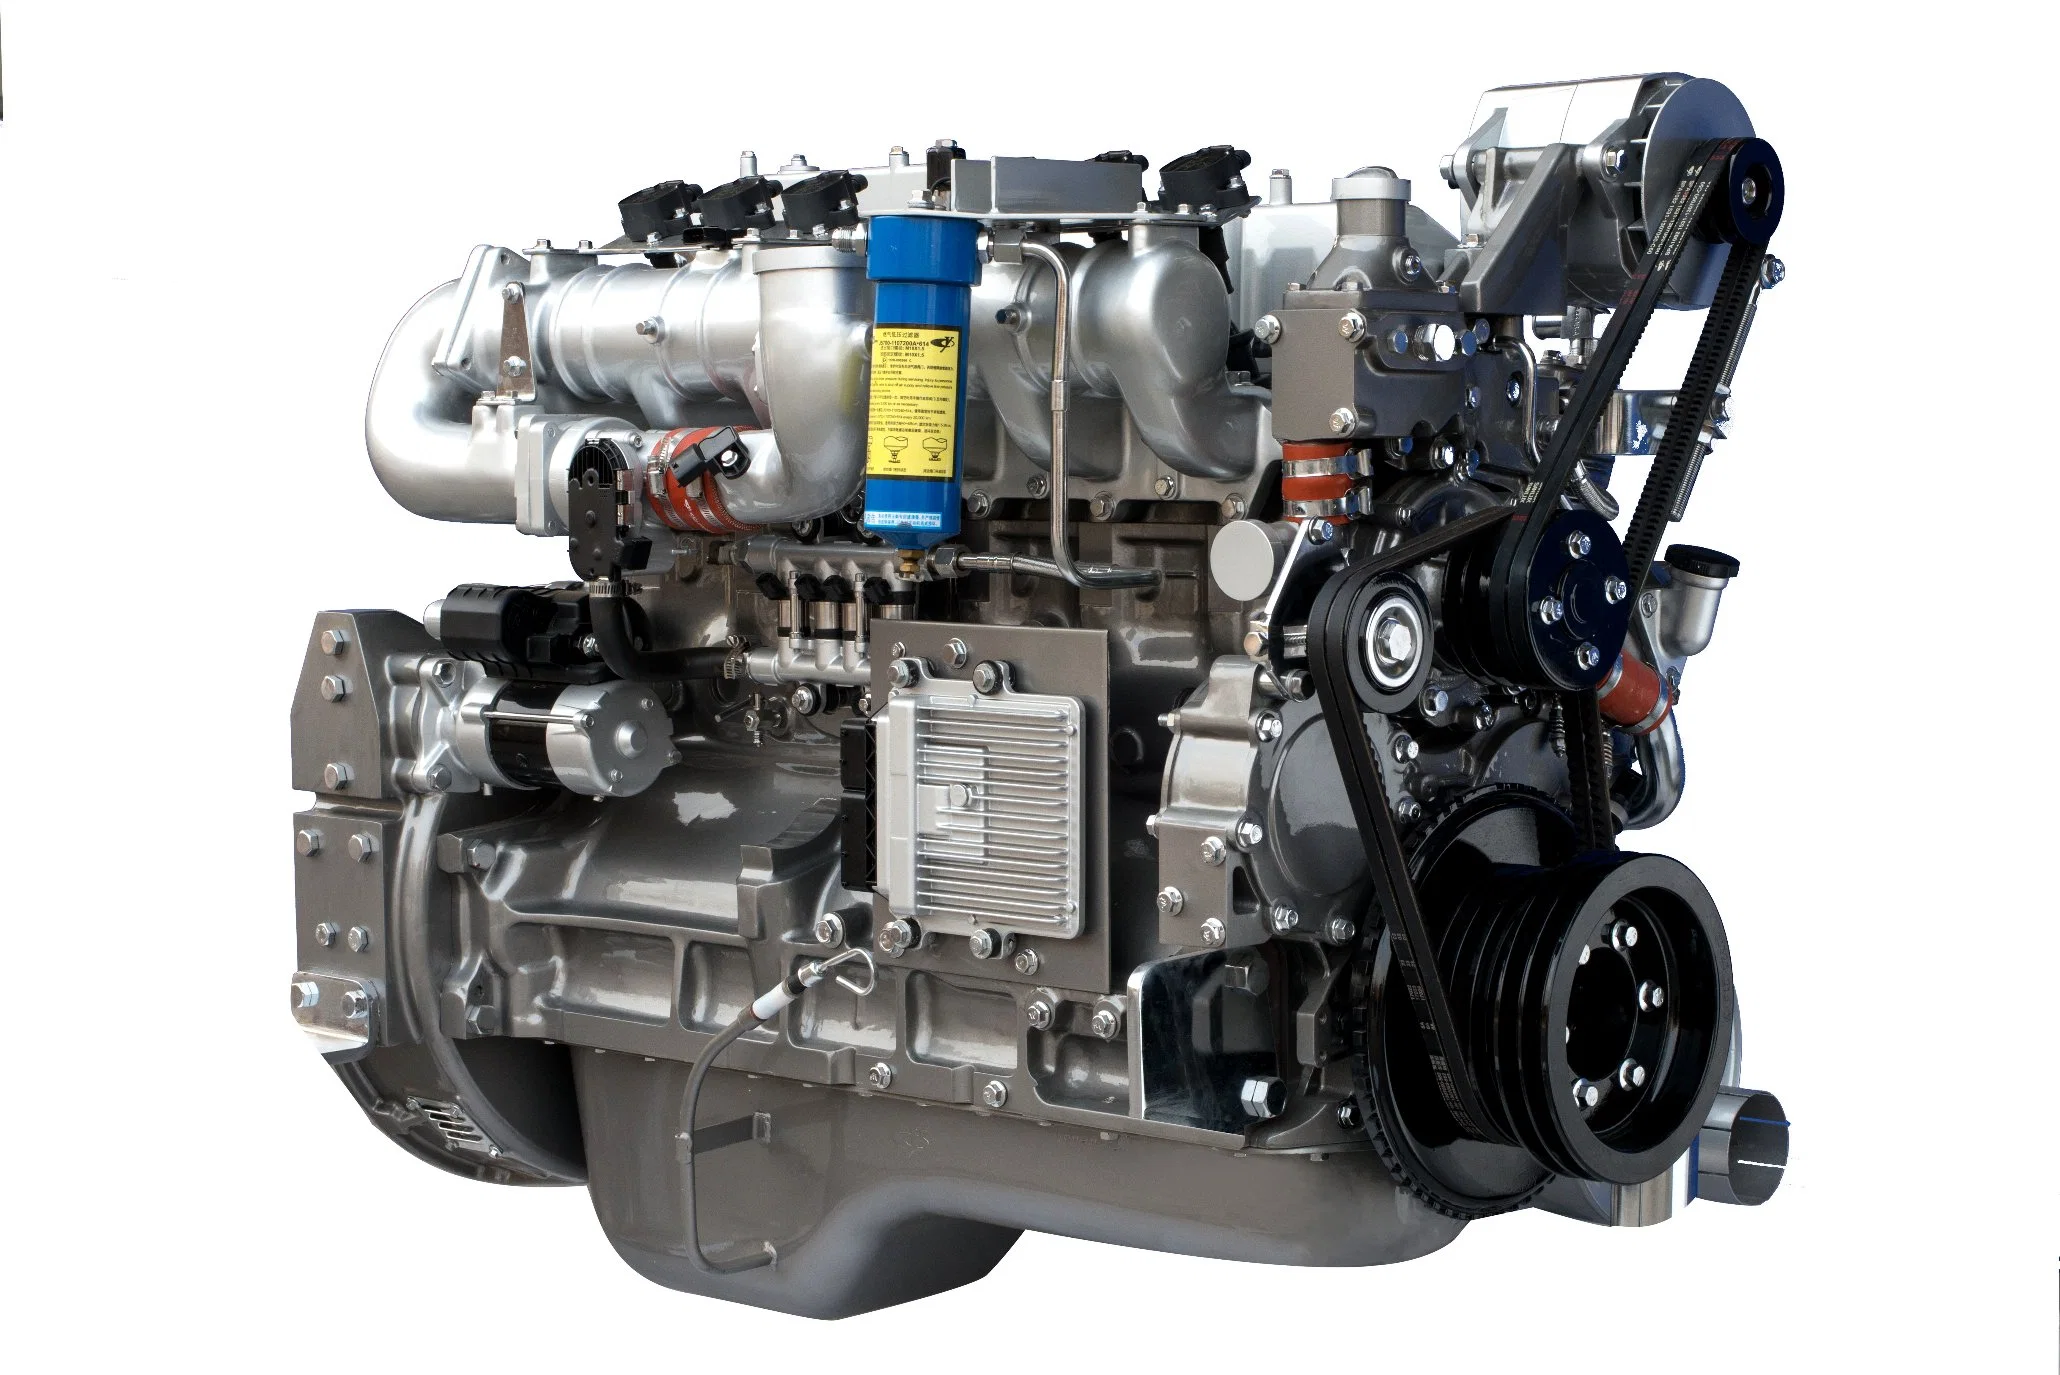 Moteur à gaz classique Yuchai YC6GN Euro 5 à 6 cylindres de haute qualité avec une bonne performance de puissance, une bonne économie, une grande fiabilité, une faible vibration et un faible bruit.